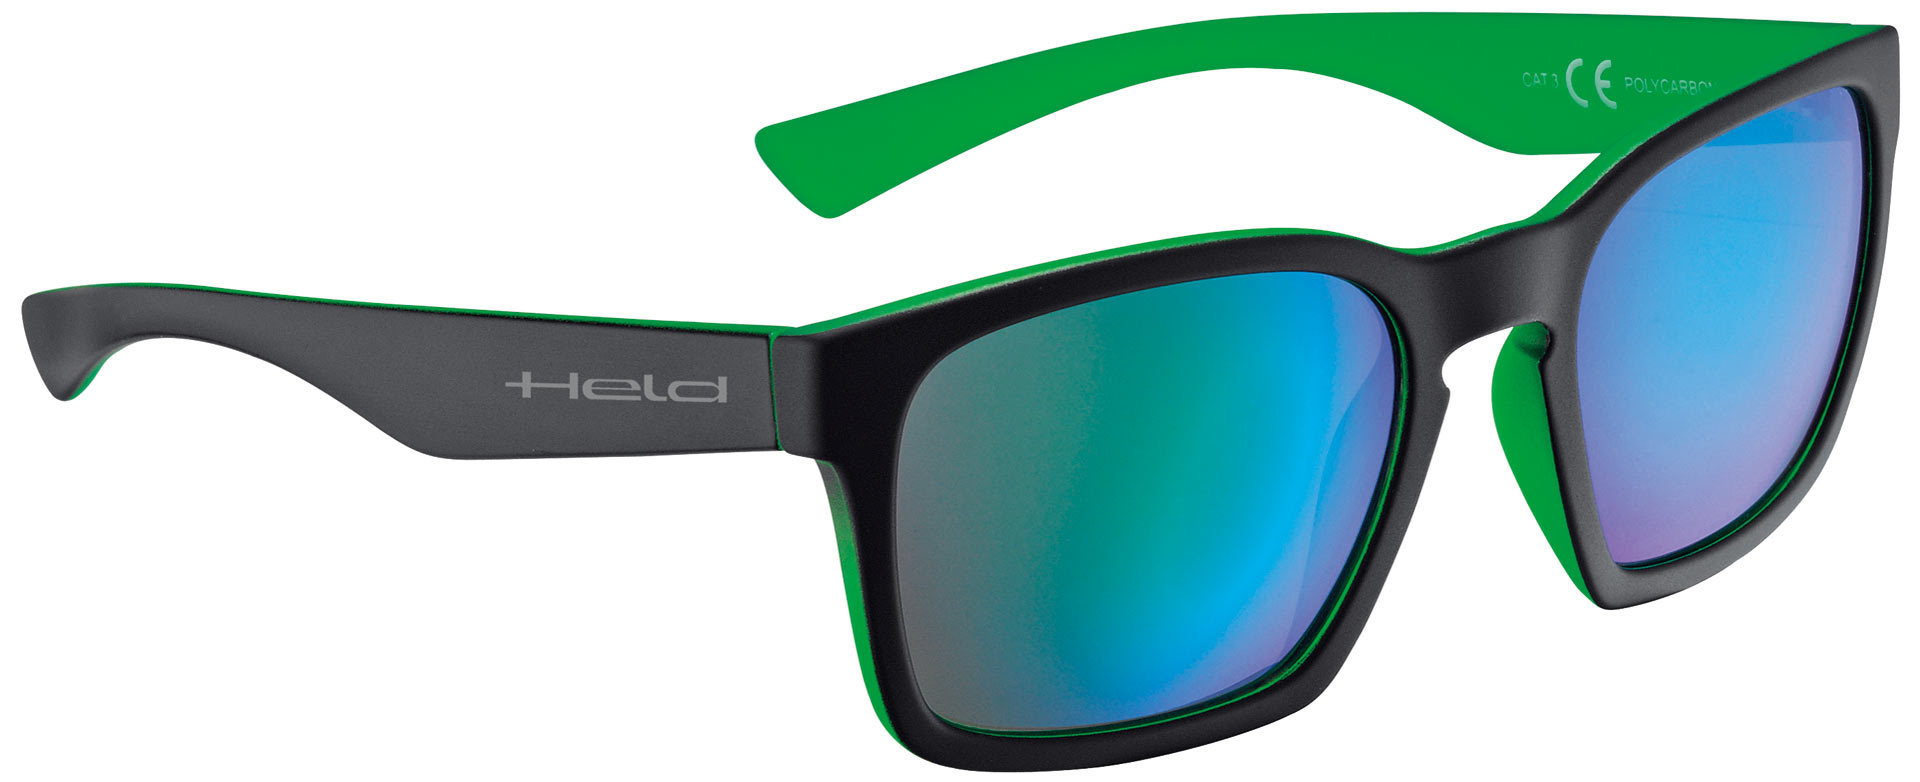 очки held 9740 солнцезащитные черный зеленый Очки Held 9740 солнцезащитные, черный/зеленый